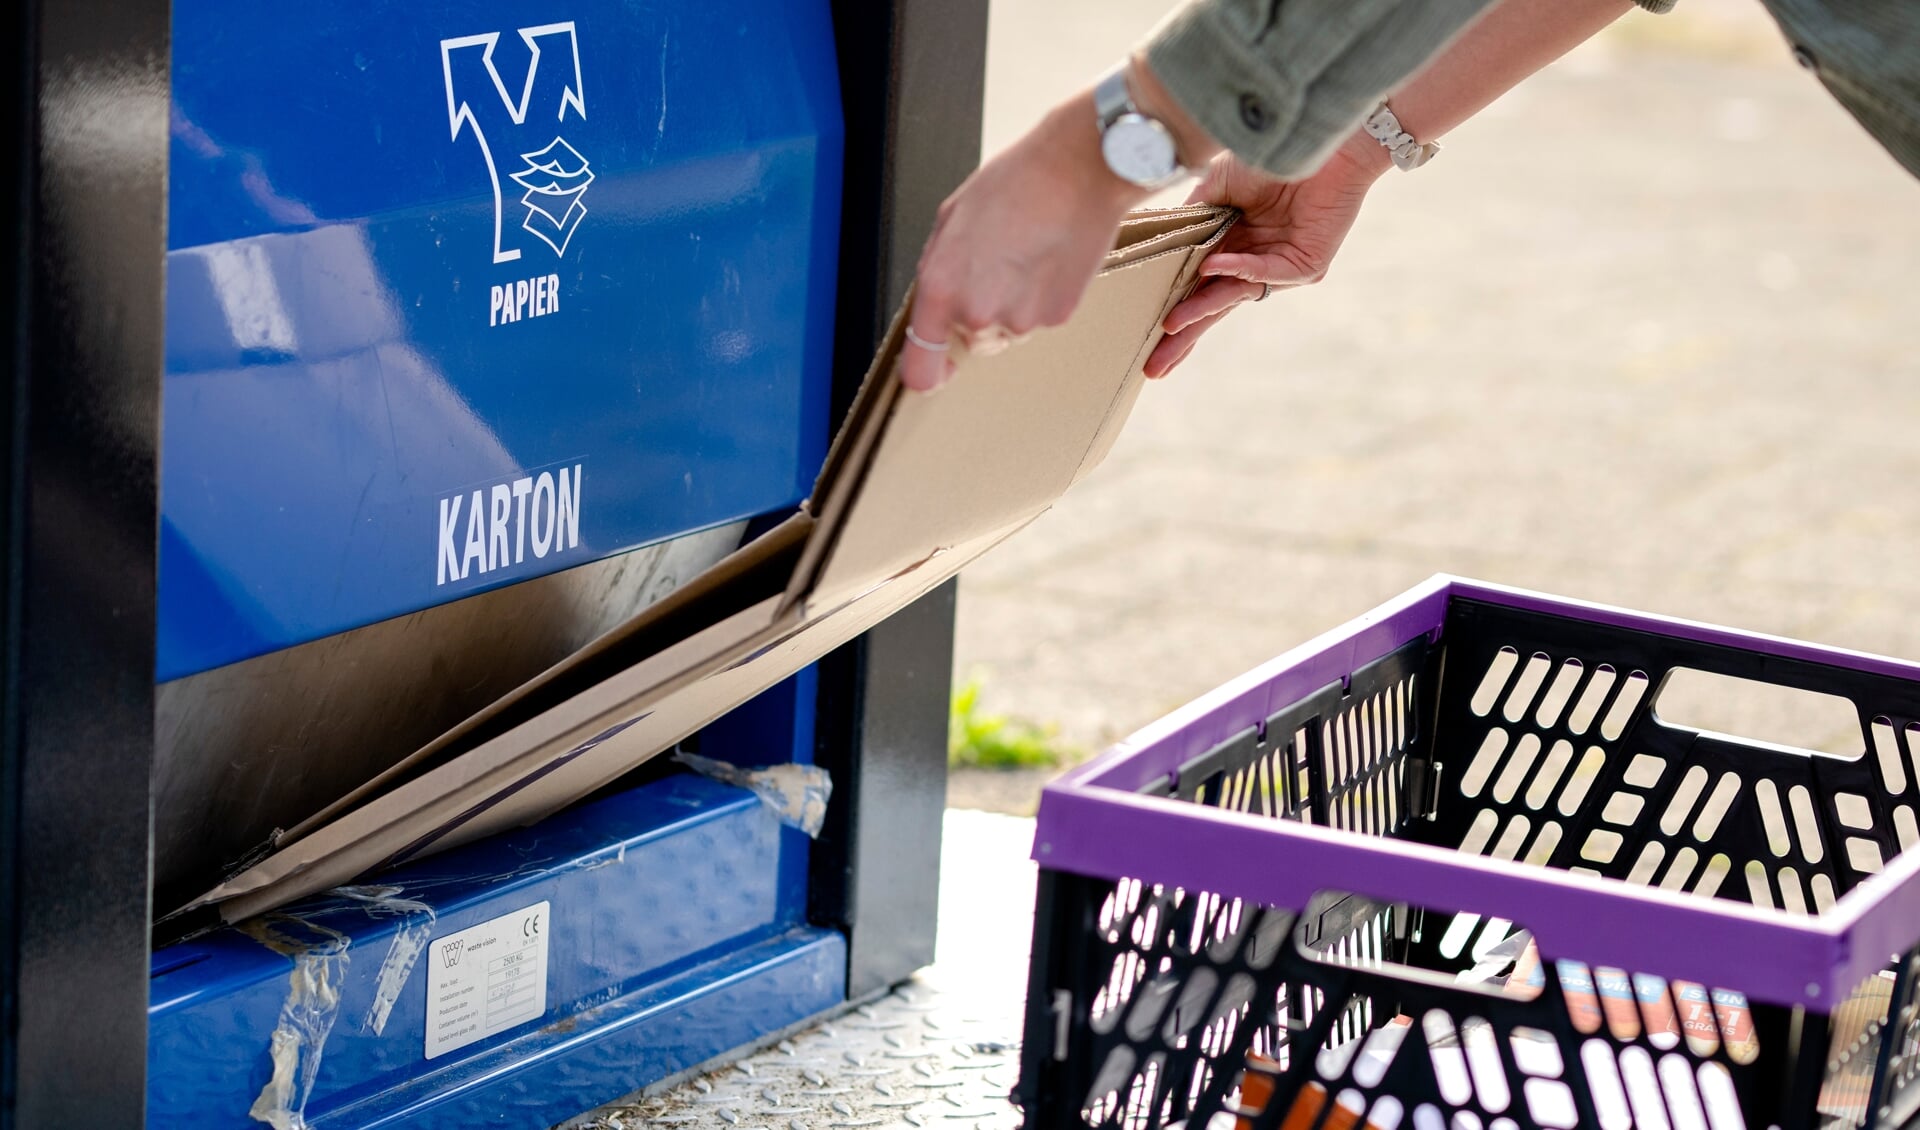 De vraag naar karton (voor pakketjes) neemt sterk toe door een grote toename van online bestellingen. De Nederlander is koploper in Europa als het gaat om afvalscheiding.